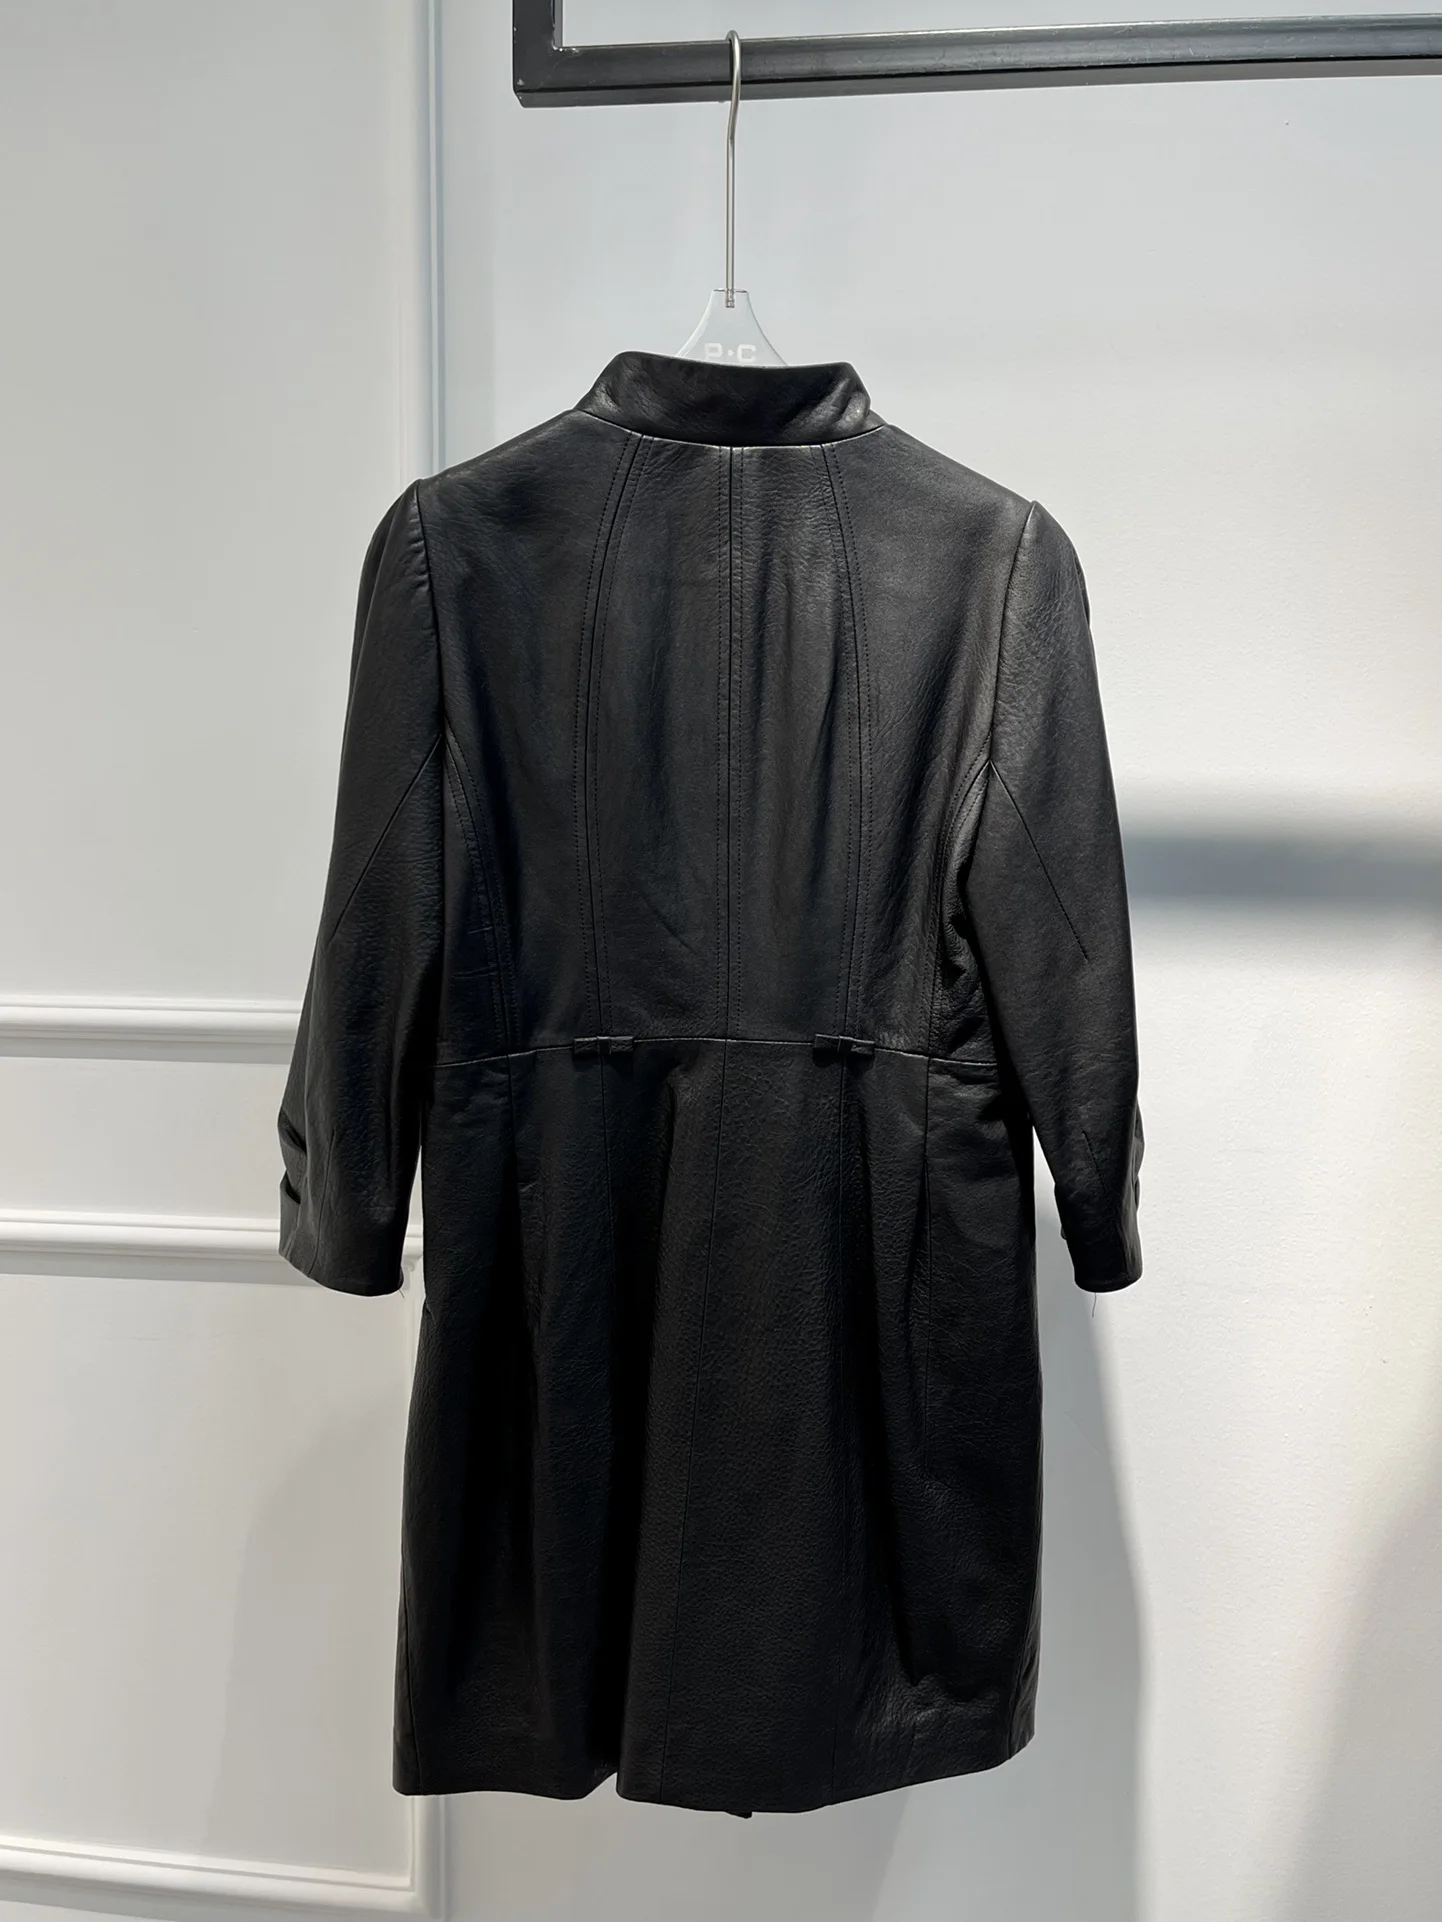 2022 Hot Sale Long Leather Jacket Top Quality Sheepskin Fashion Unisex Basics Coat Fast Delivery enlarge